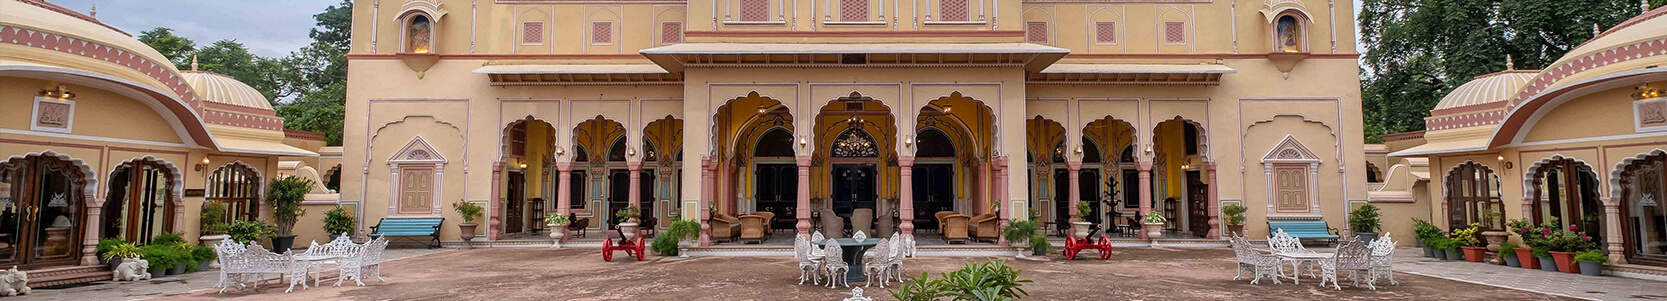 Hotel Narain Niwas Palace